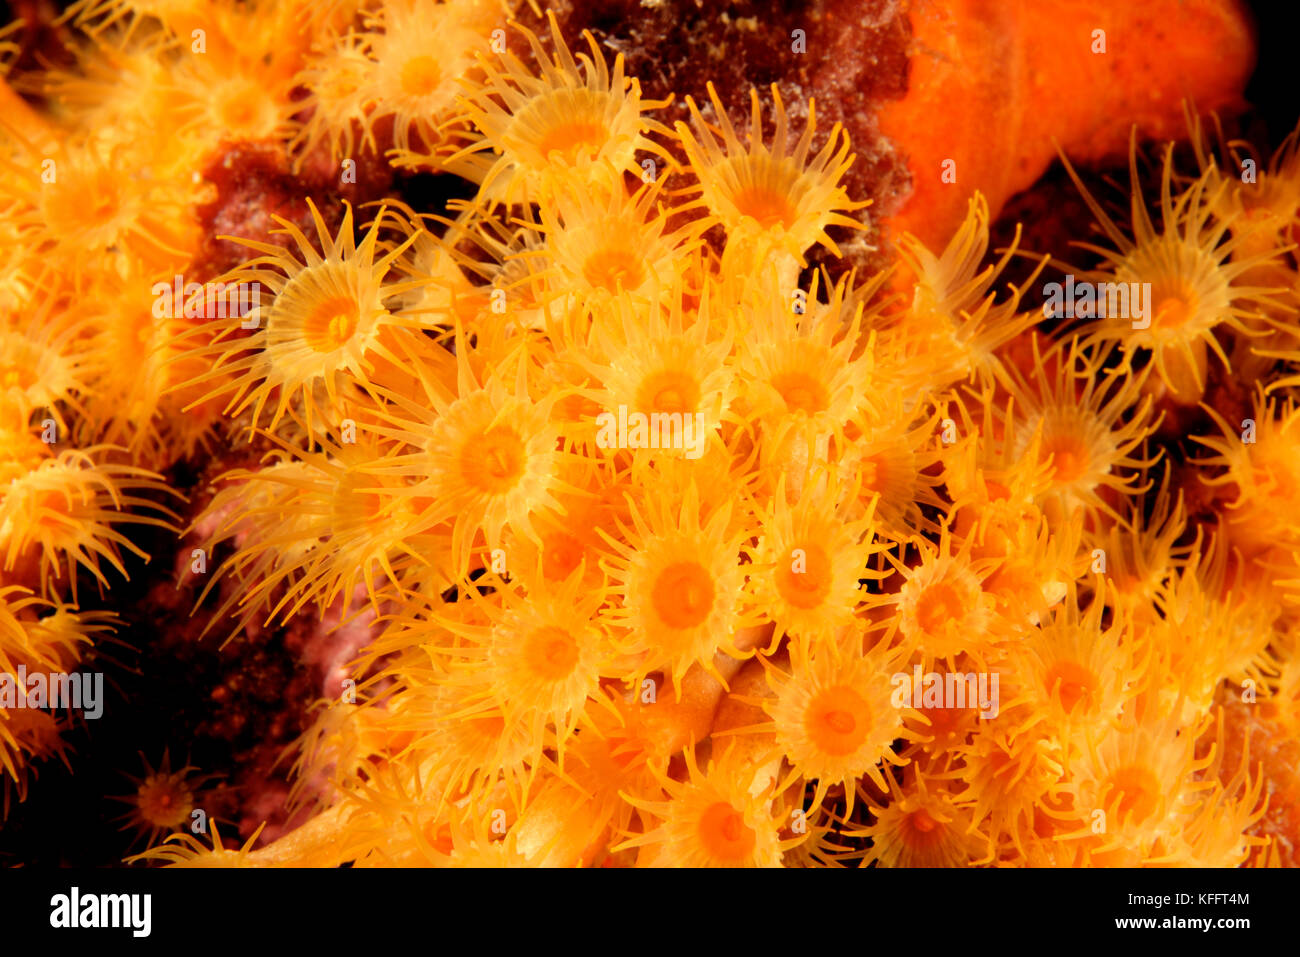 Giallo anemone incrostanti, Parazoanthus axinellae, mare adriatico, mare mediterraneo, isole di Kornati, Croazia Foto Stock